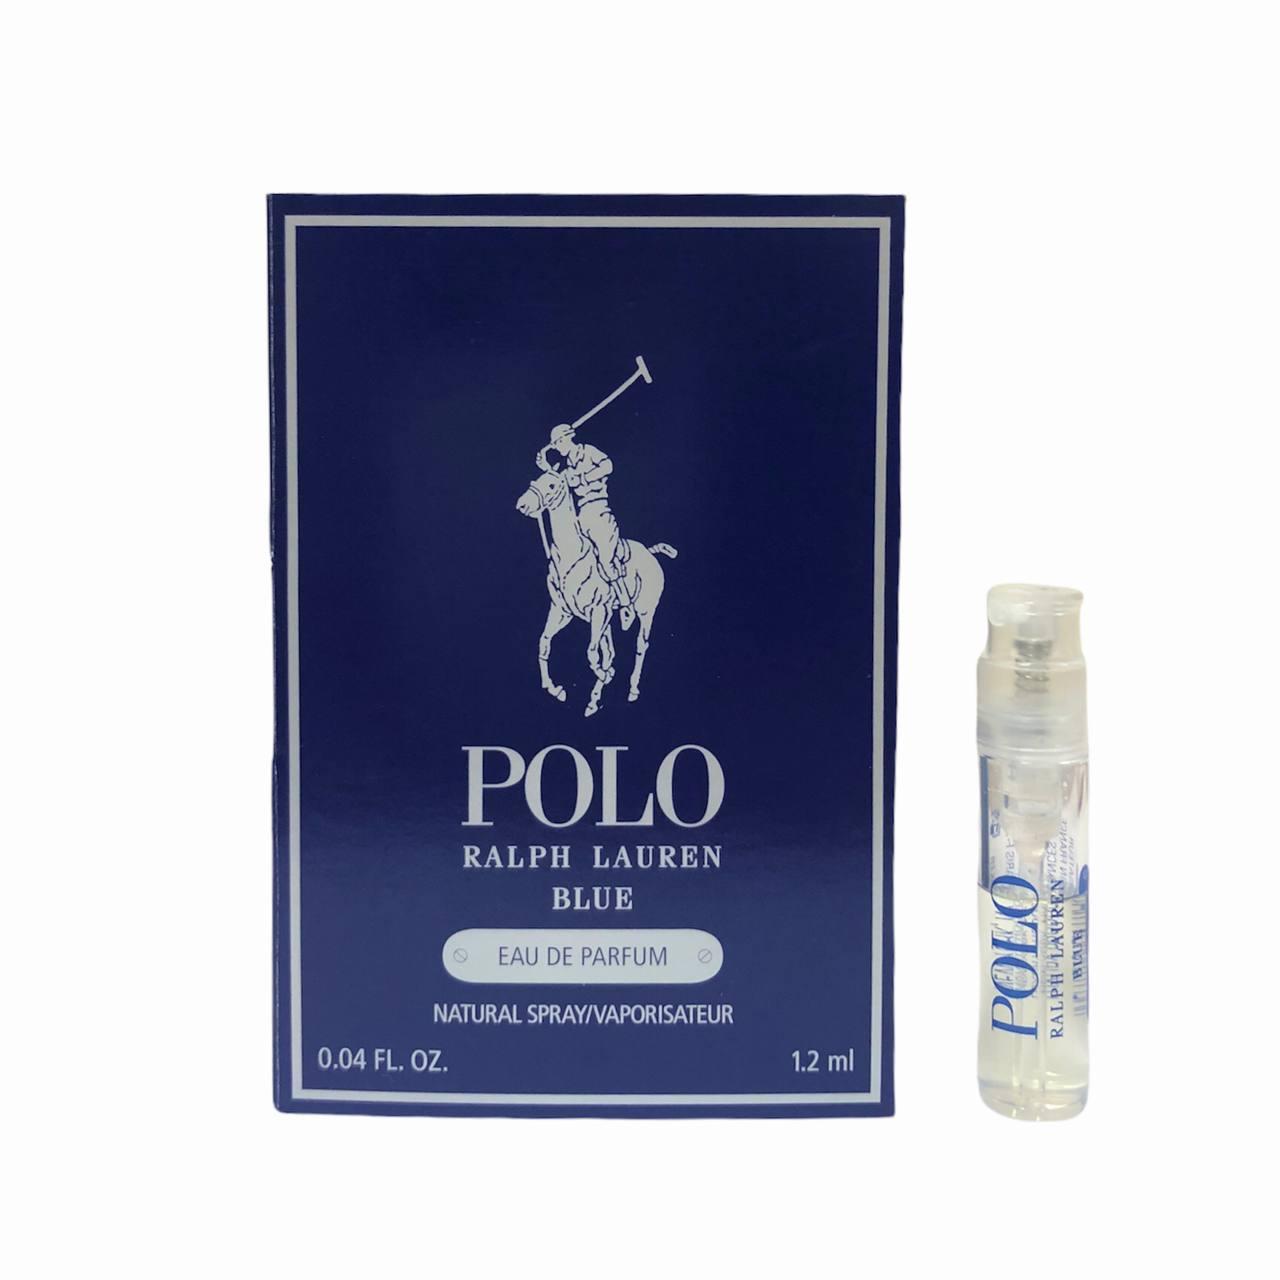 ПРОБНИК чоловічі парфуми RALPH LAUREN Polo Blue парфумована вода 1,2 ml, свіжий деревний фужерний аромат